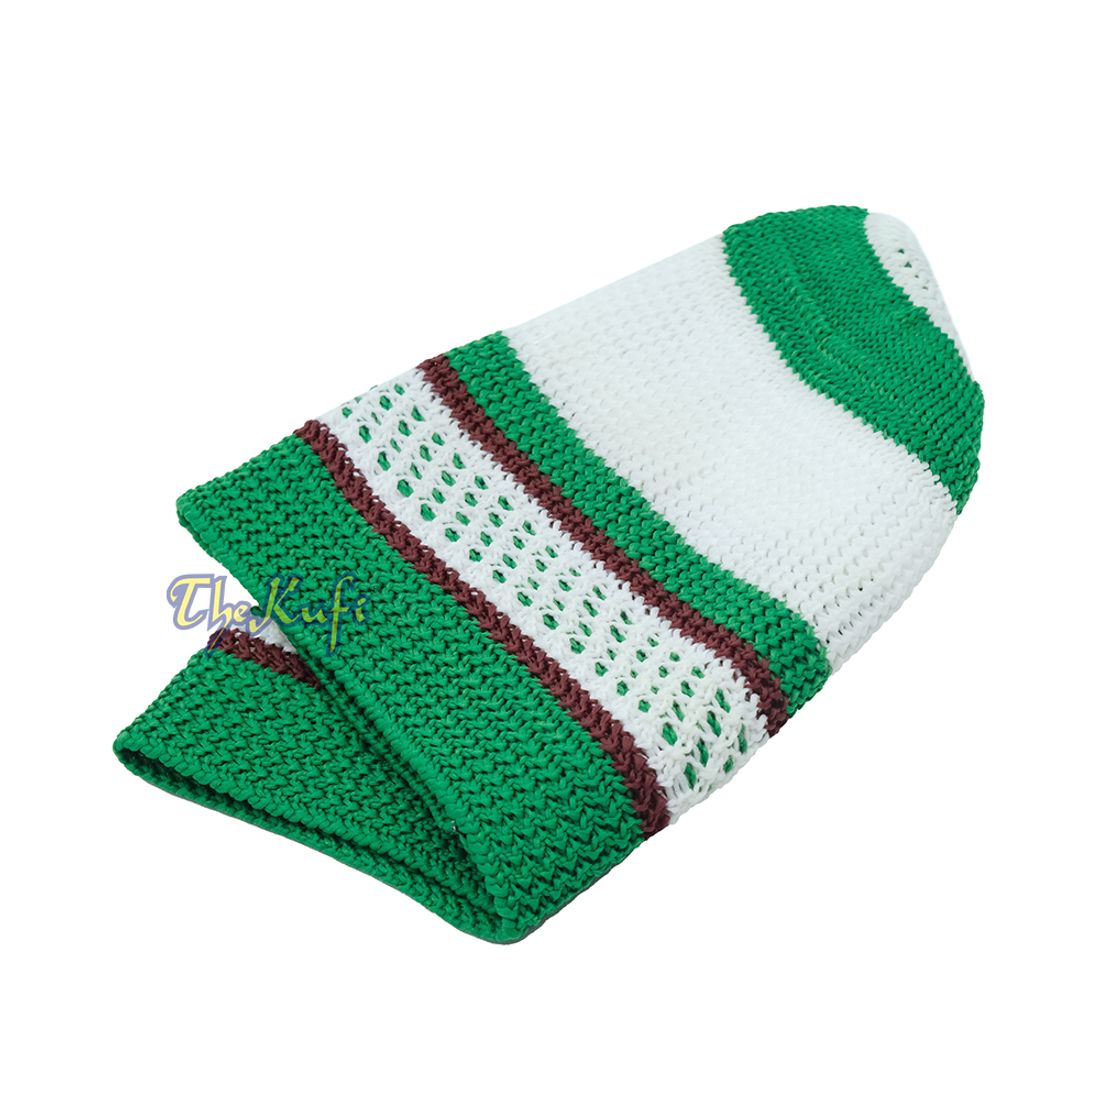 Nylon Kufi – White Green Dark Brown Stripes 3-color Knit Skullcap Skullie Topi Cap